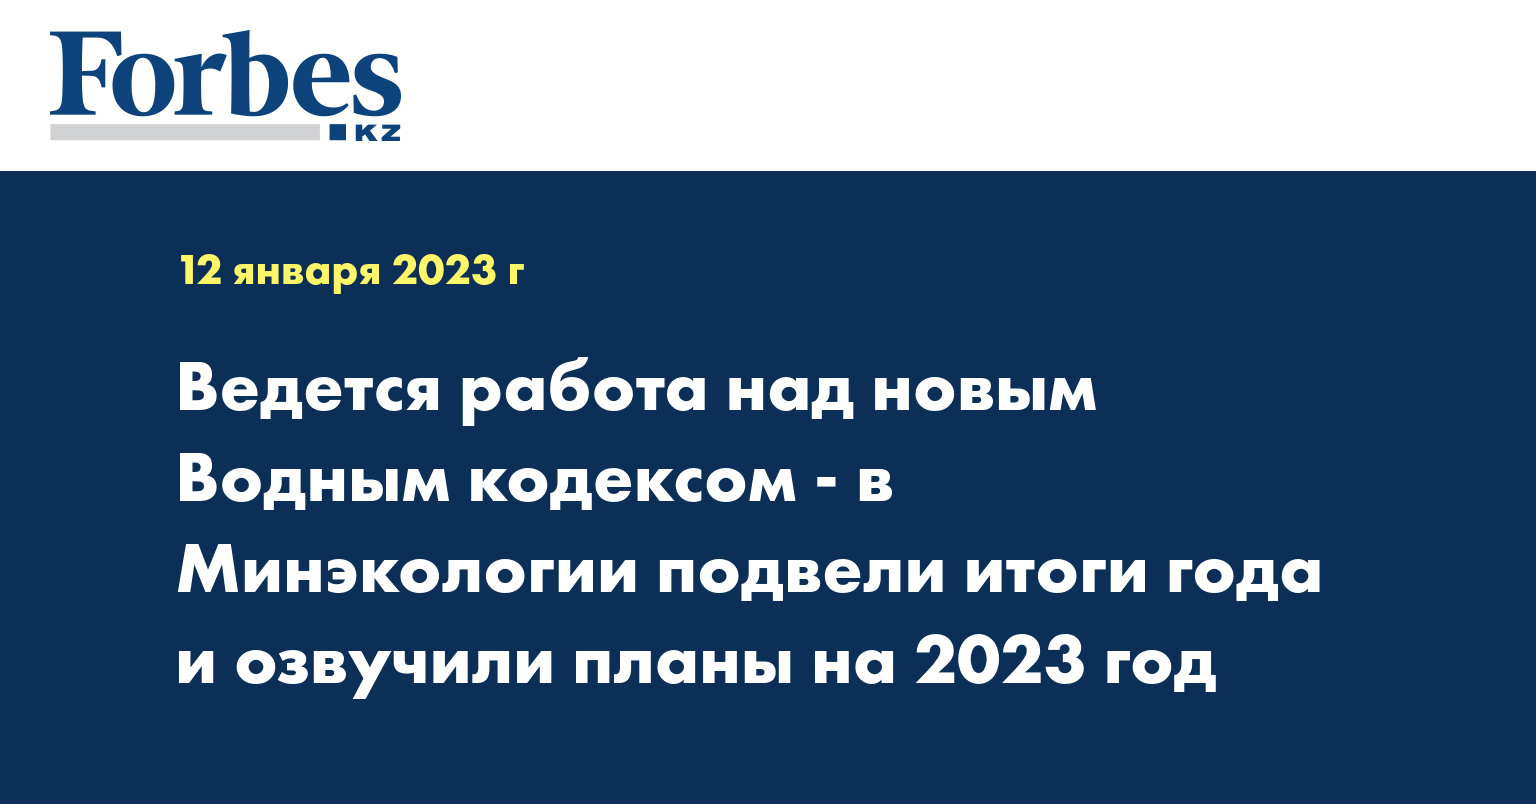 Ведется работа над новым Водным кодексом - в Минэкологии подвели итоги года и озвучили планы на 2023 год